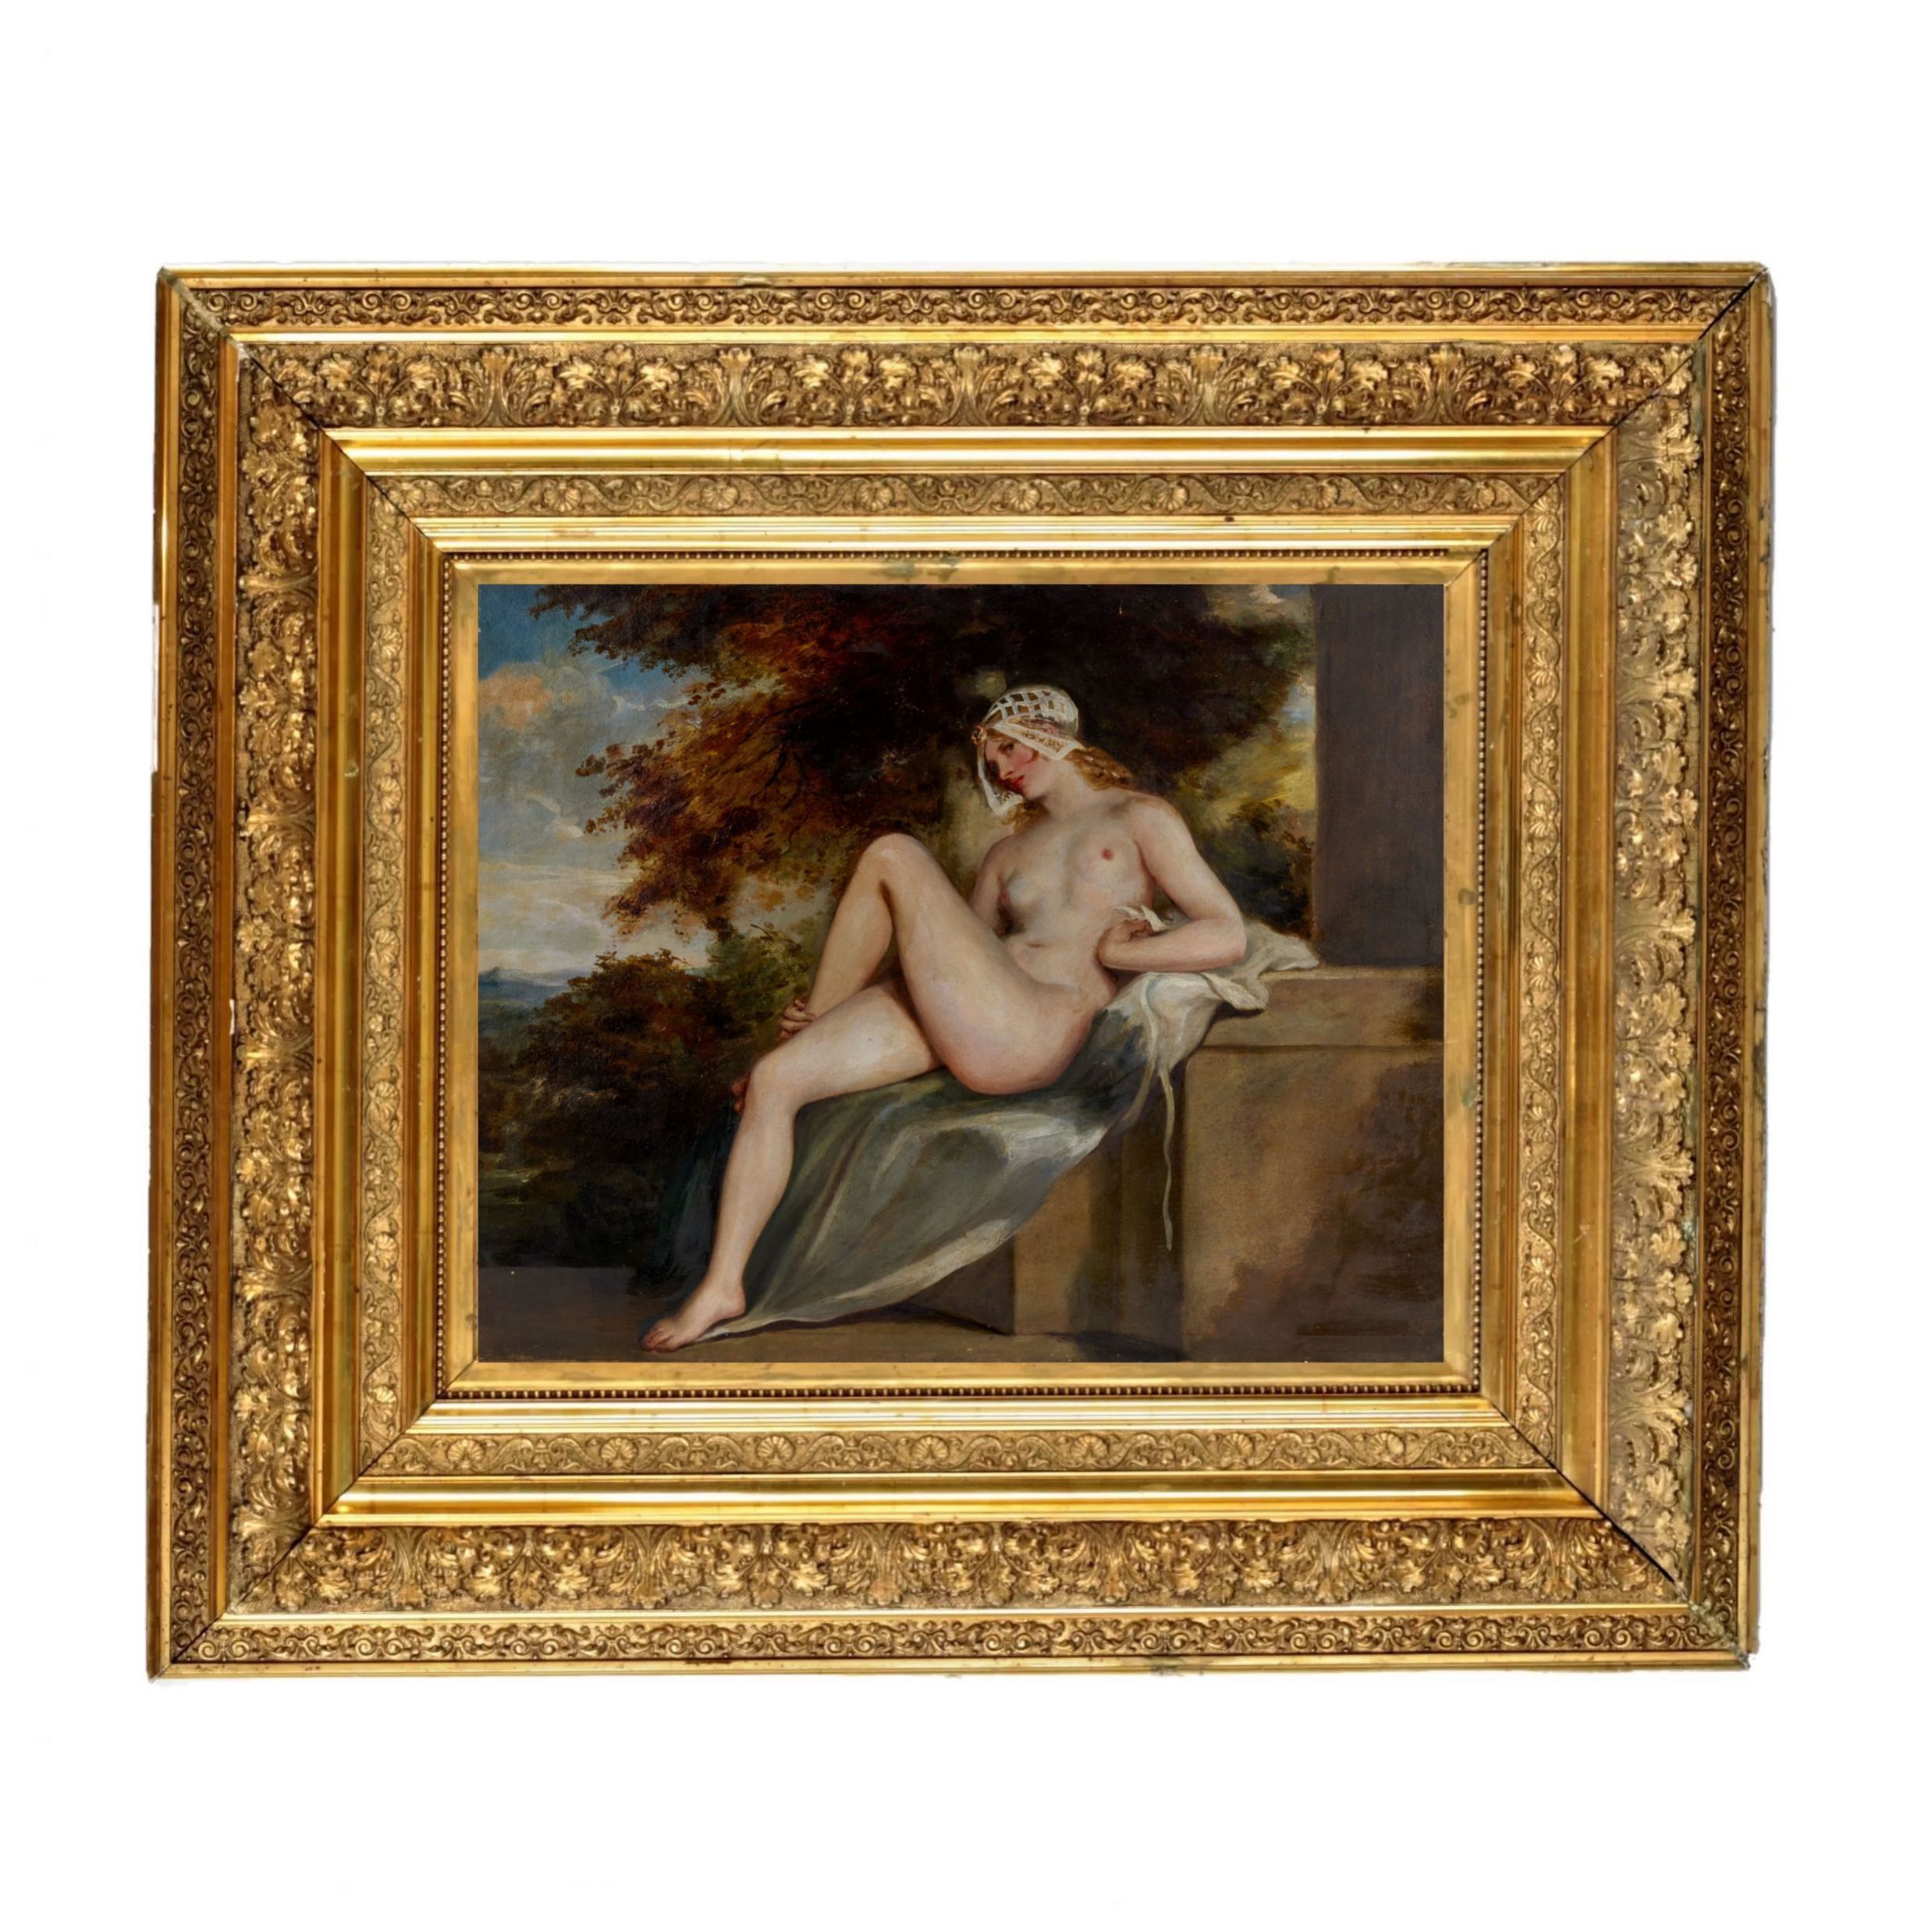 Nude-William-Etty-19th-century-